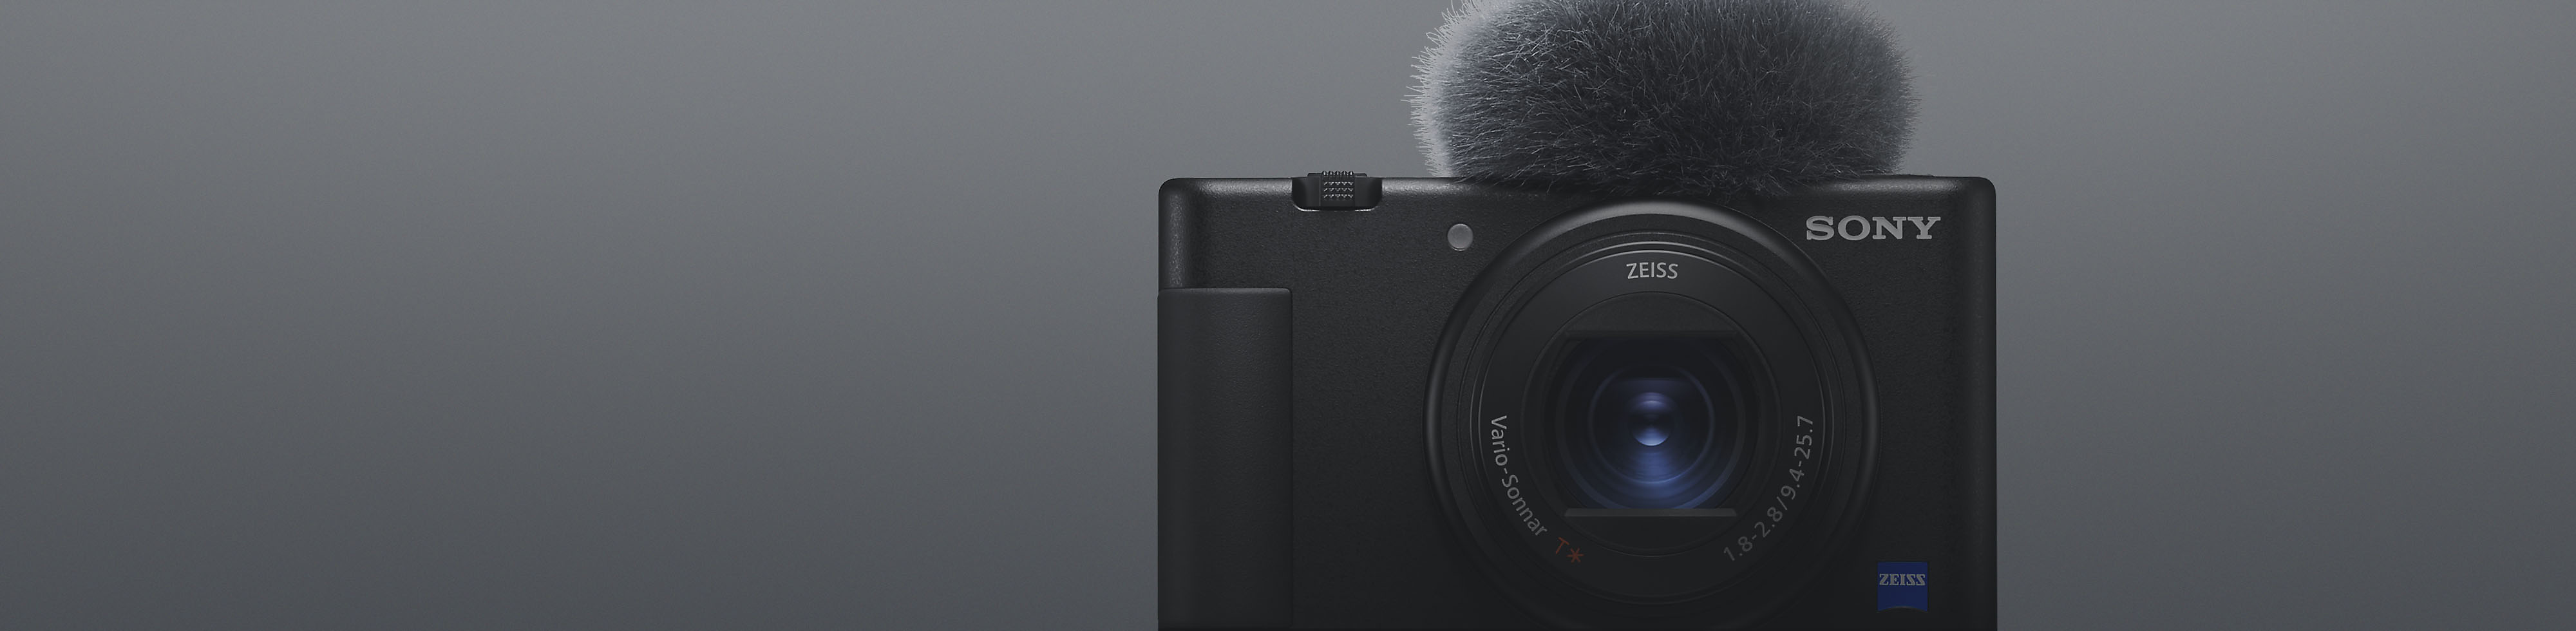 Vista frontal da câmara compacta Sony em preto com microfone acoplado